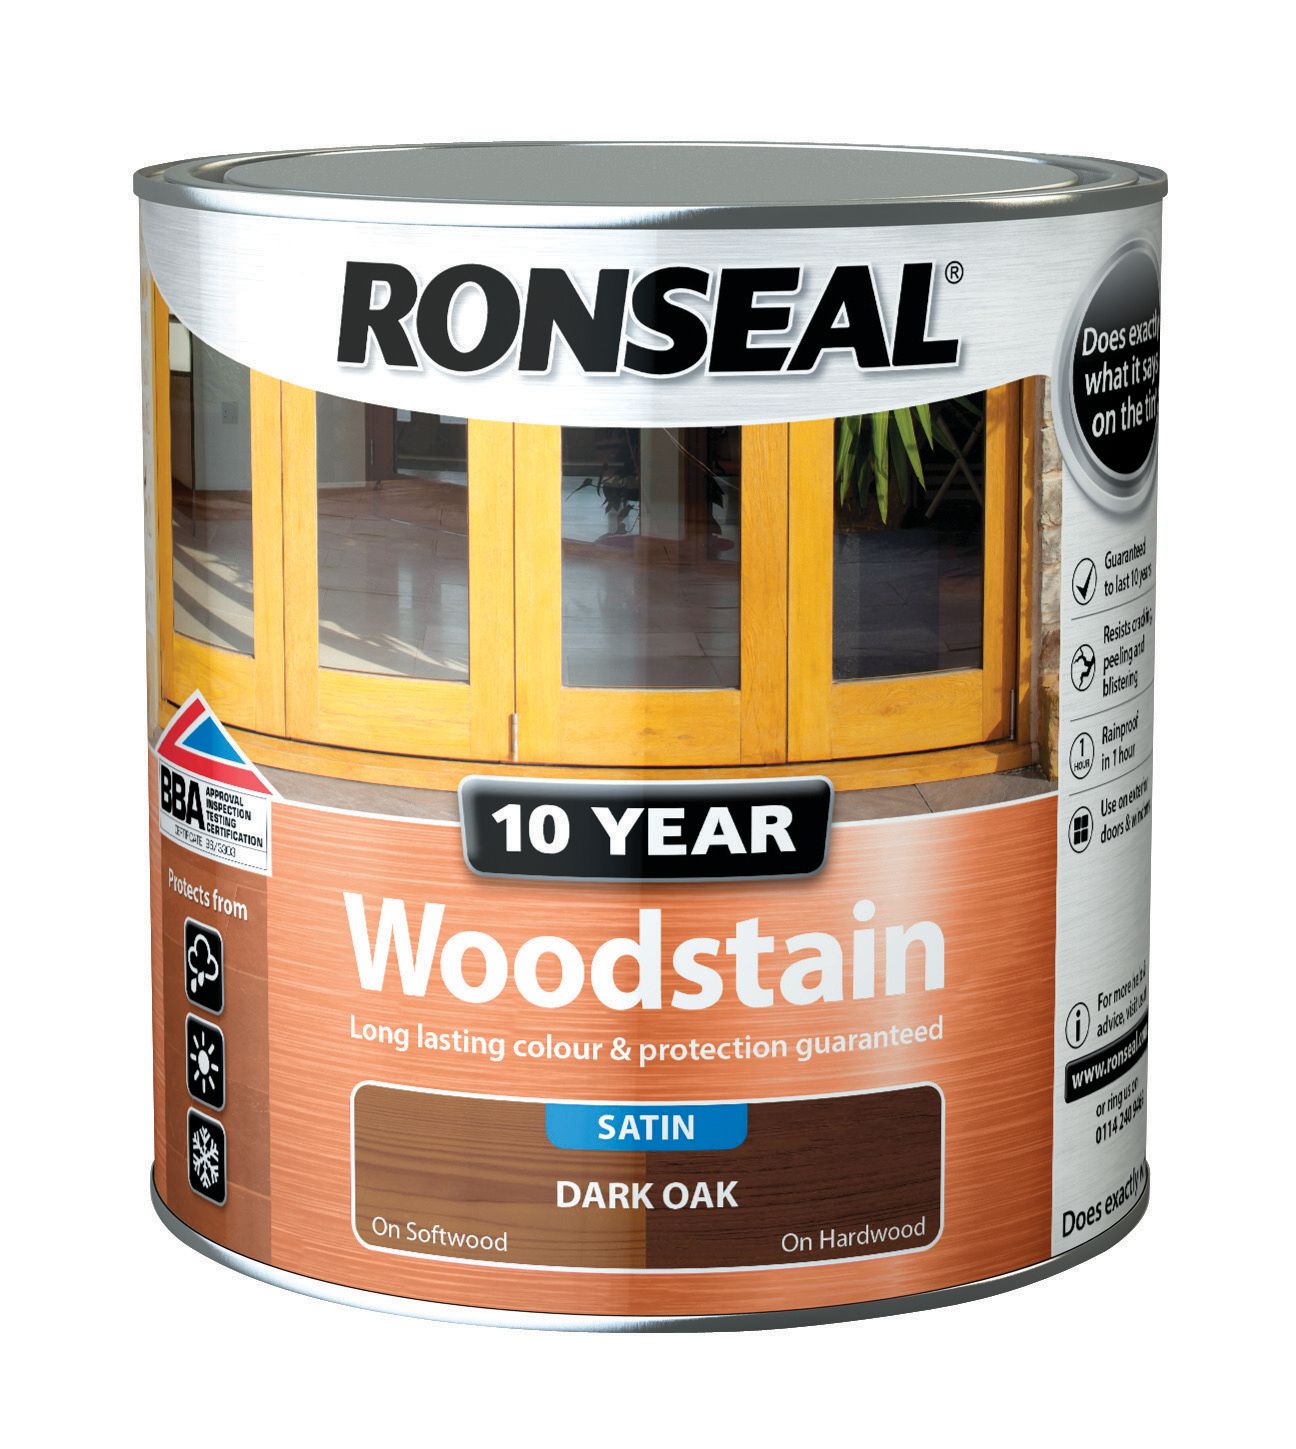 Ronseal 10 Year Woodstain - Dark Oak - 2.5L